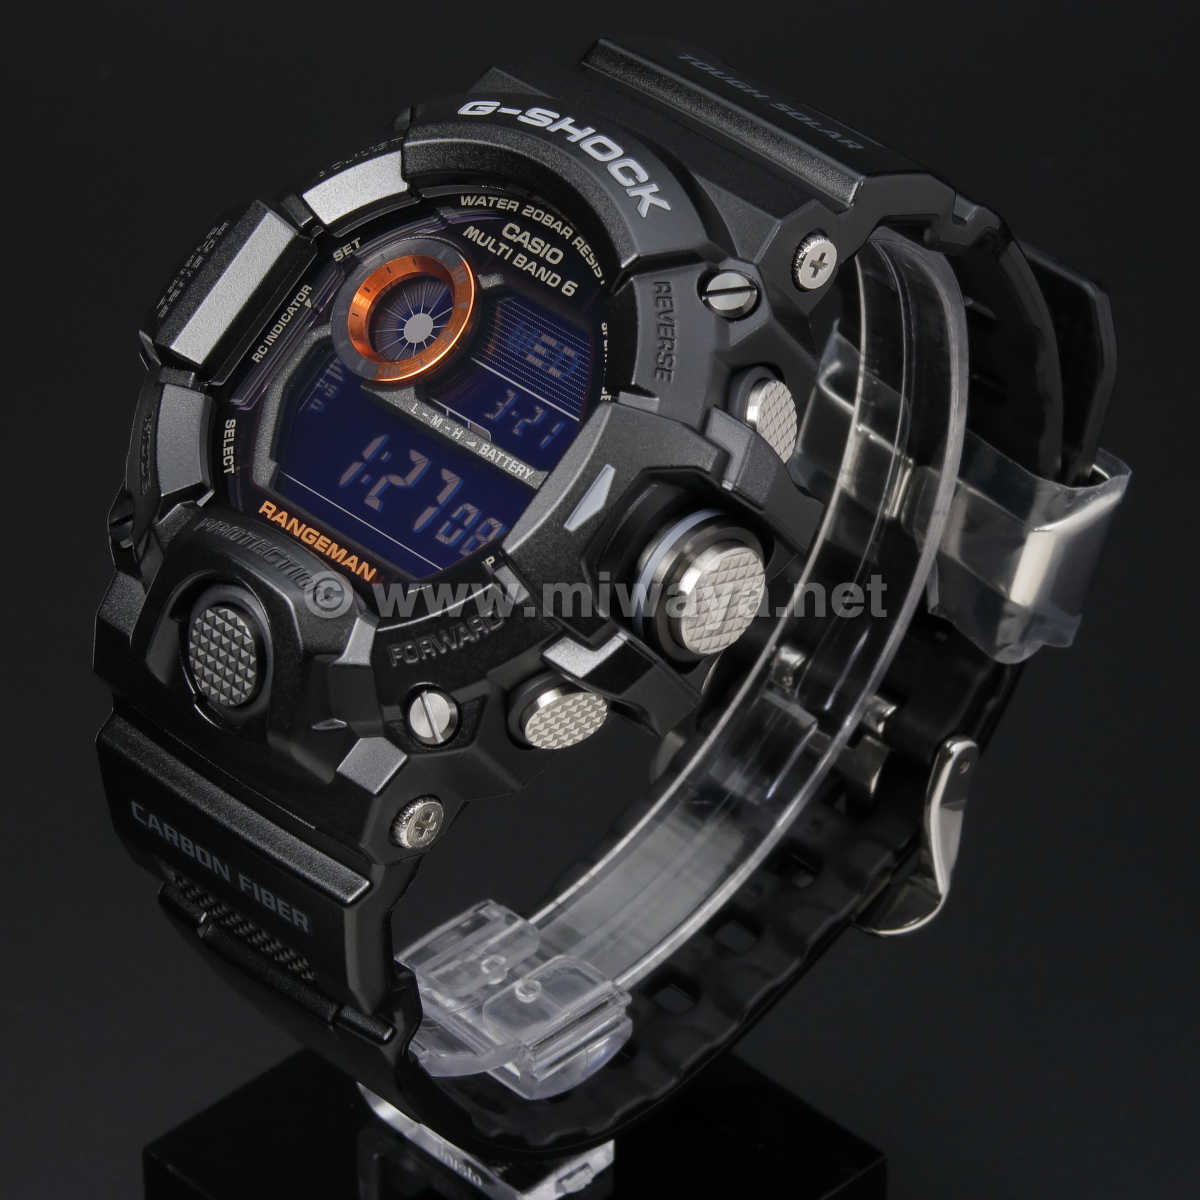 【新品未使用品】G-SHOCK GW-9400BJ-1JF 腕時計 Gショック